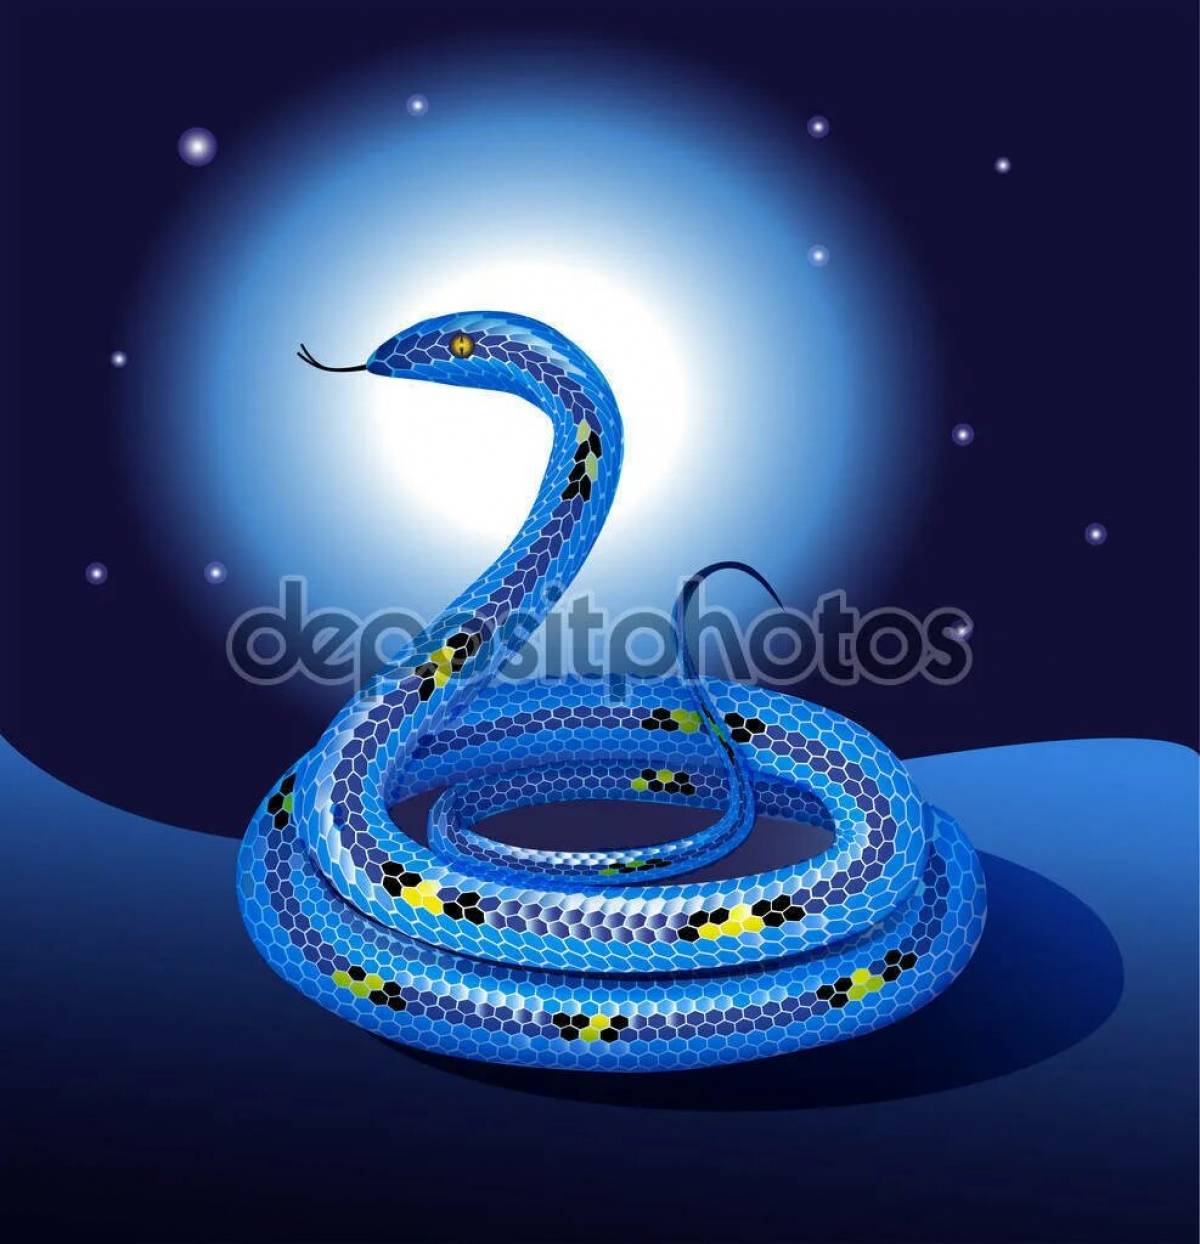 Голубая змейка бажов #1